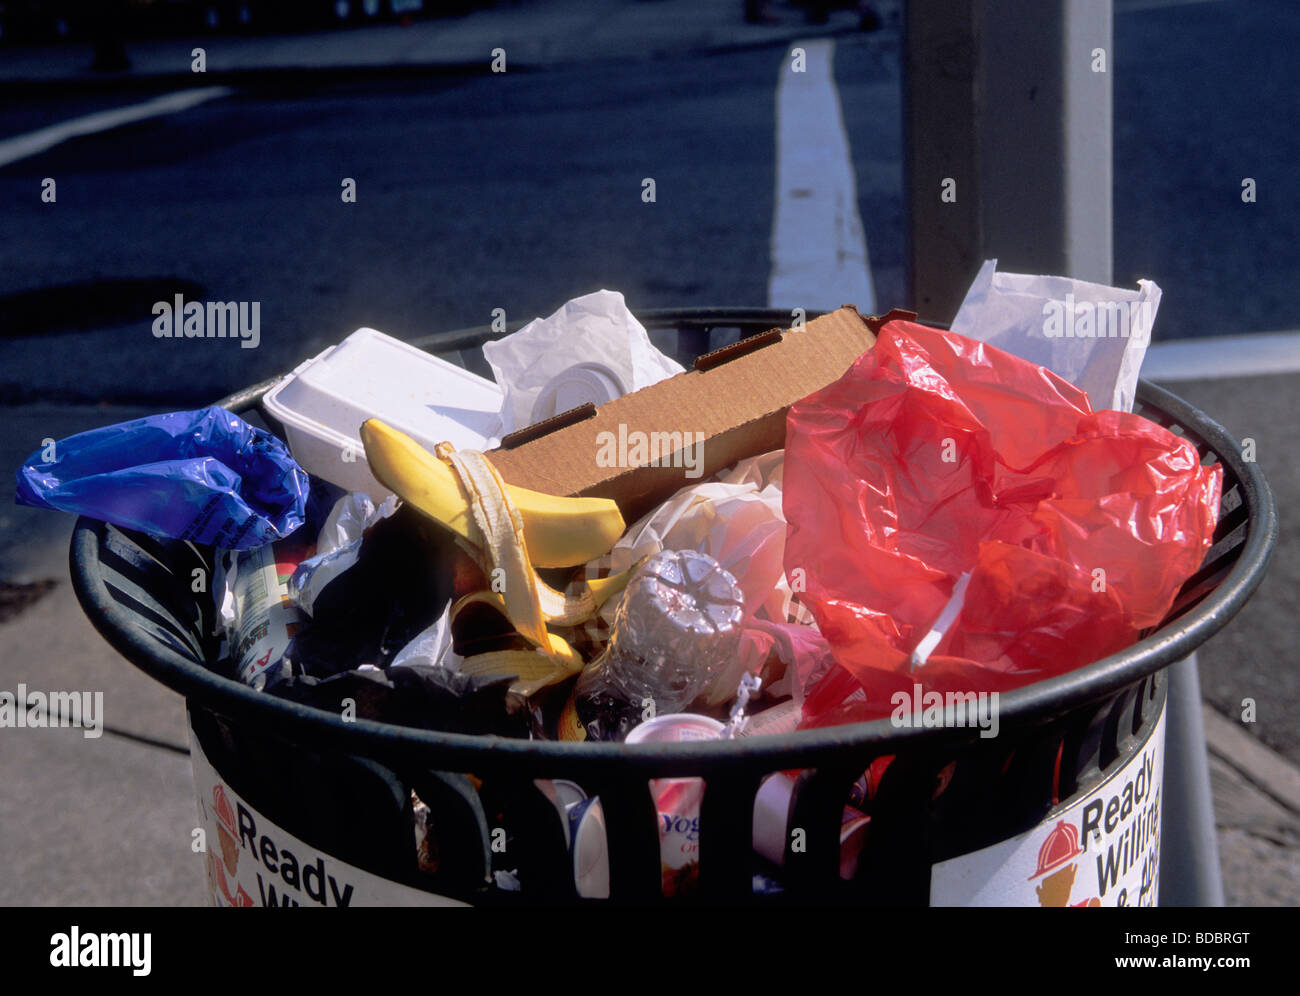 Müllsammlung im Mülleimer. Überlaufender Abfalleimer mit recycelbaren Plastikbeuteln und Plastikflaschen. Stockfoto